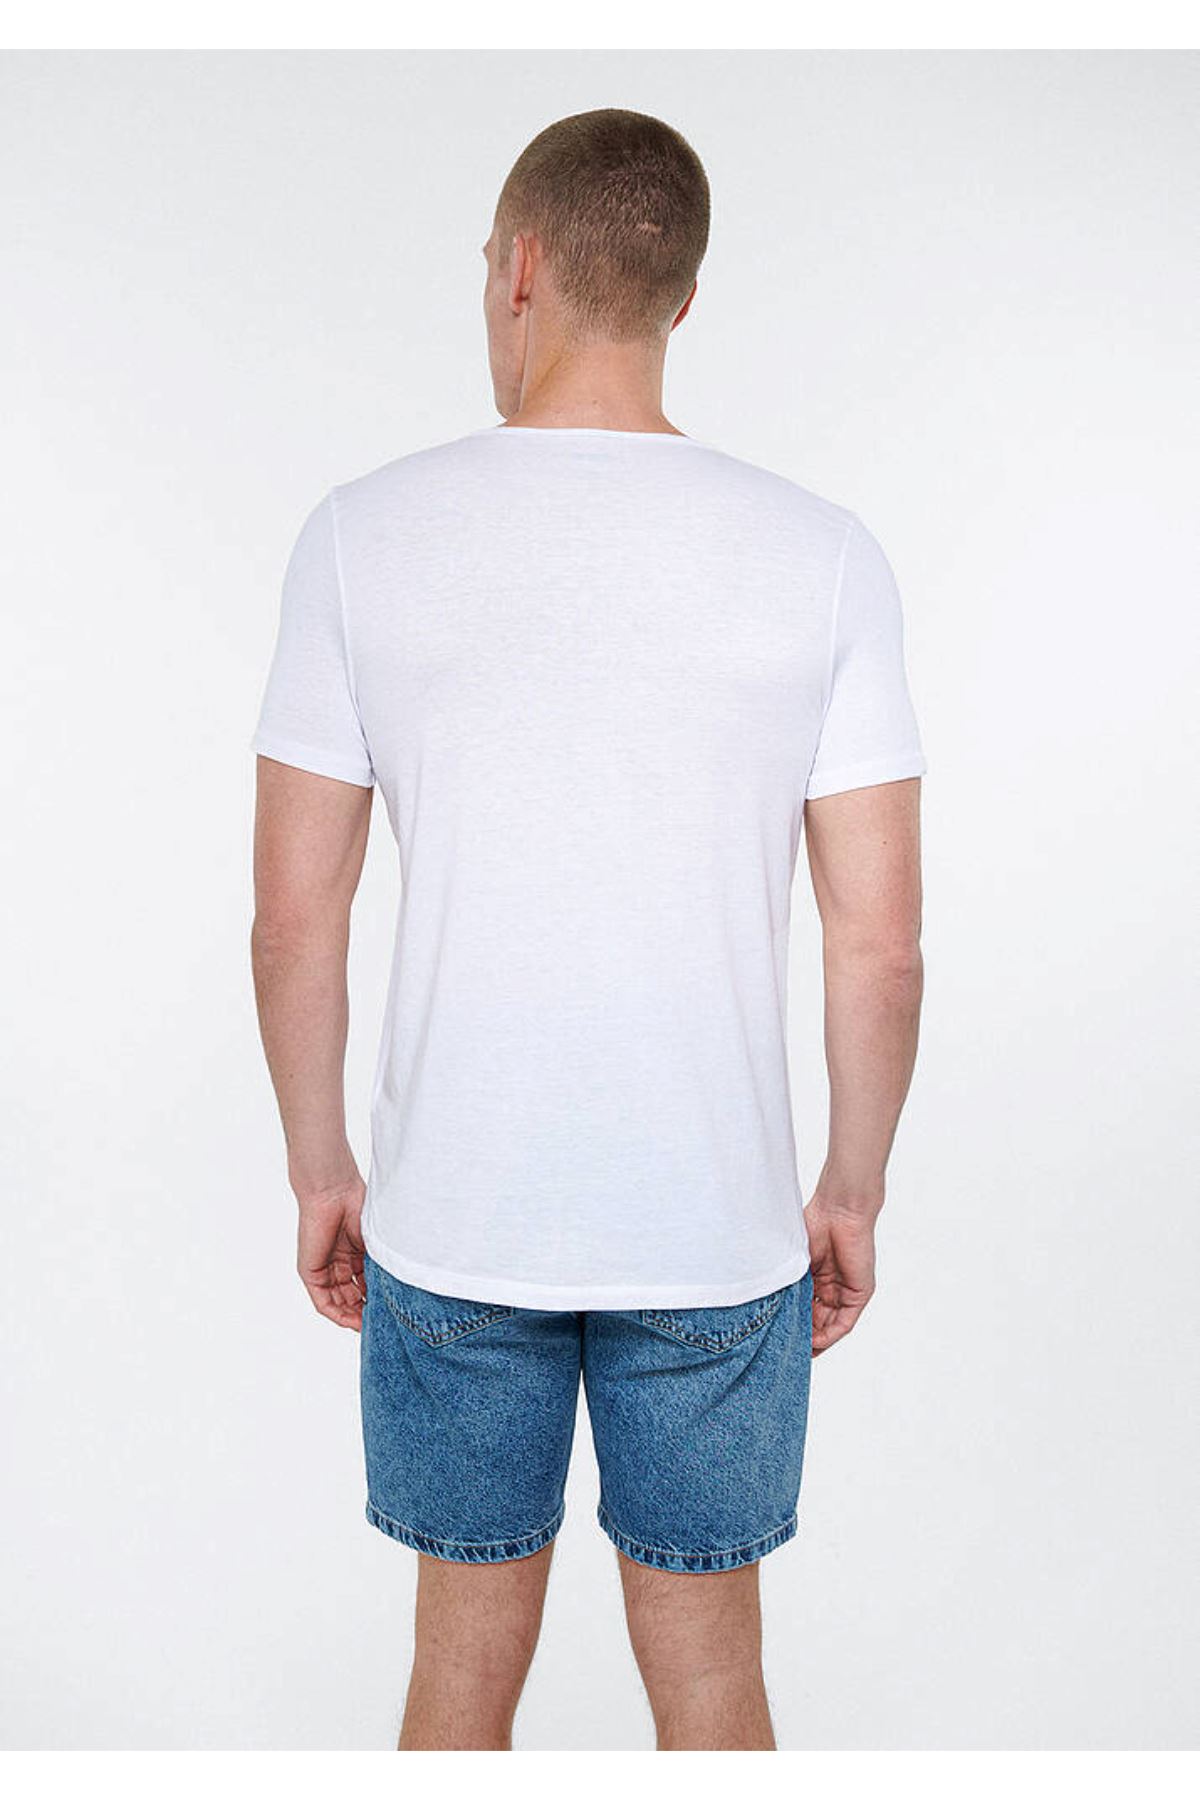 Erkek Beyaz Tişört - M064019-620